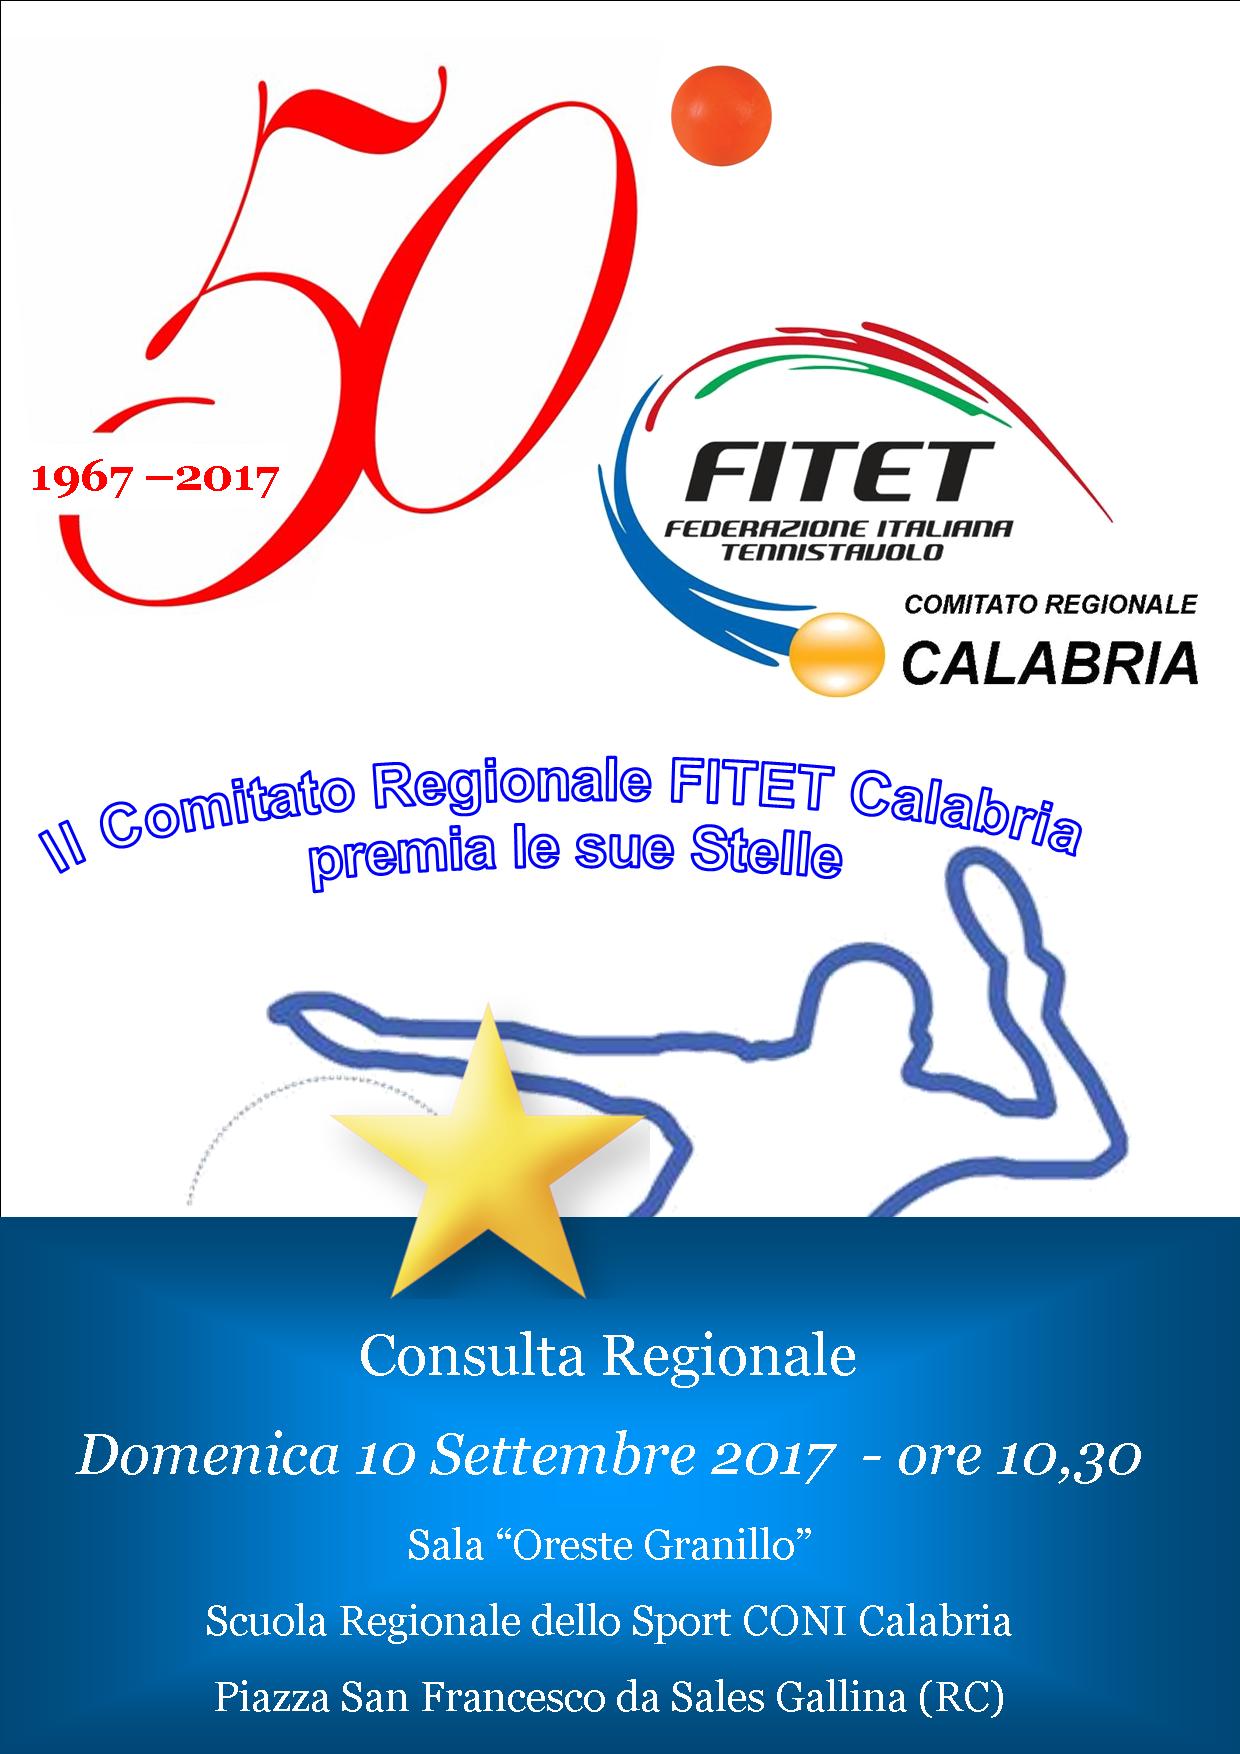 50 anniversario Fitet Calabria